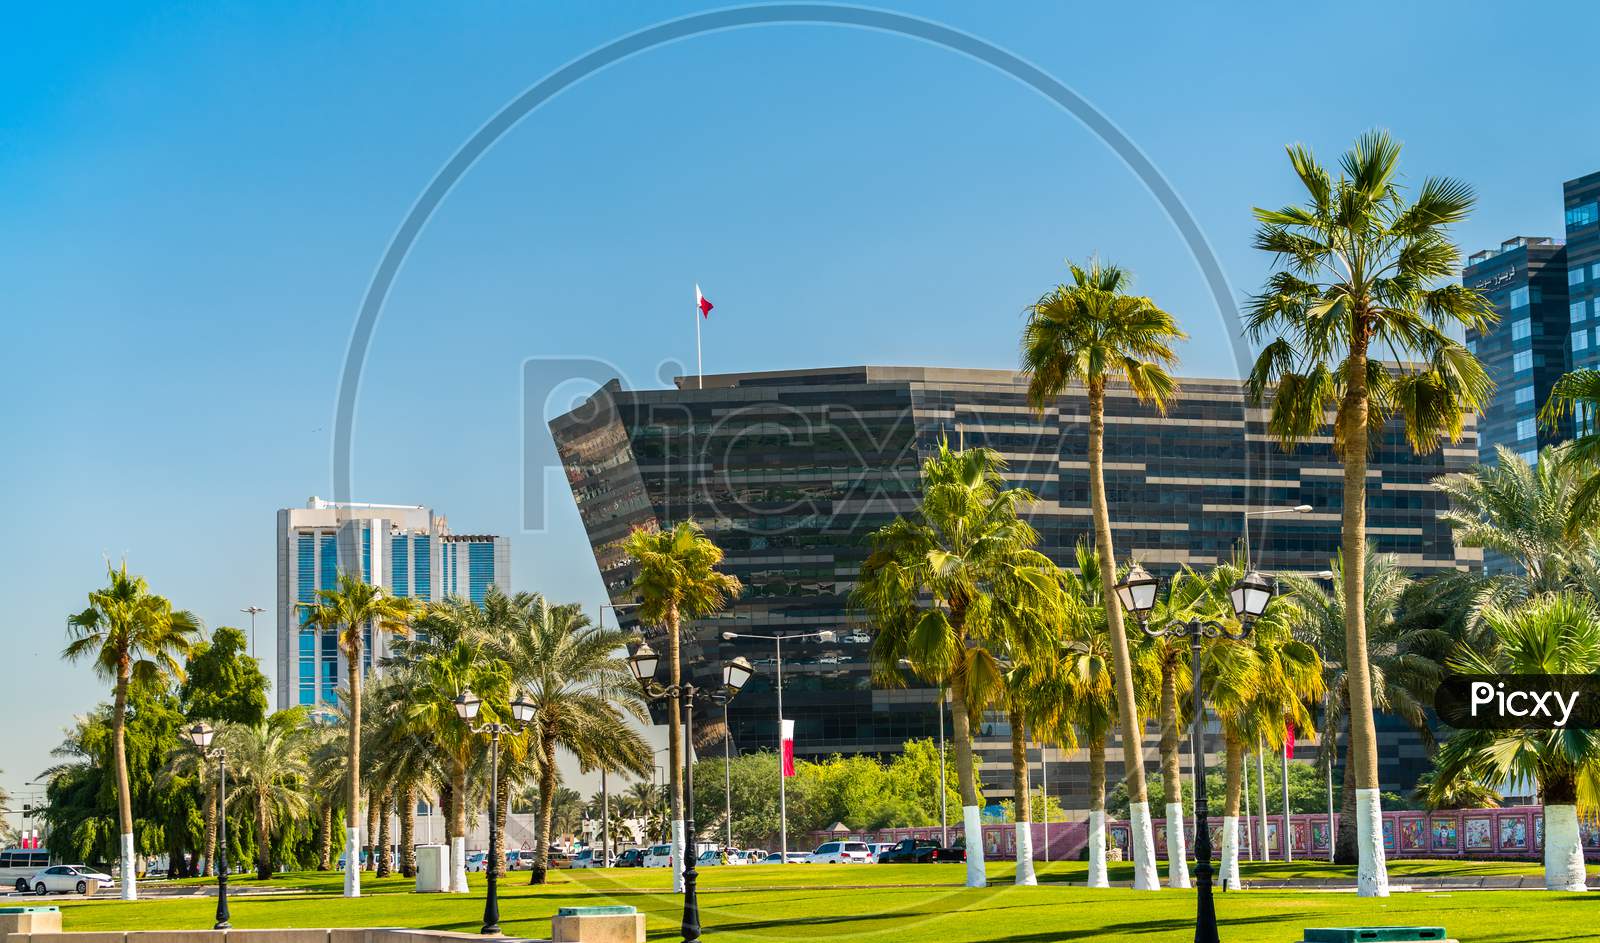 Corniche Promenade Park In Doha, Qatar